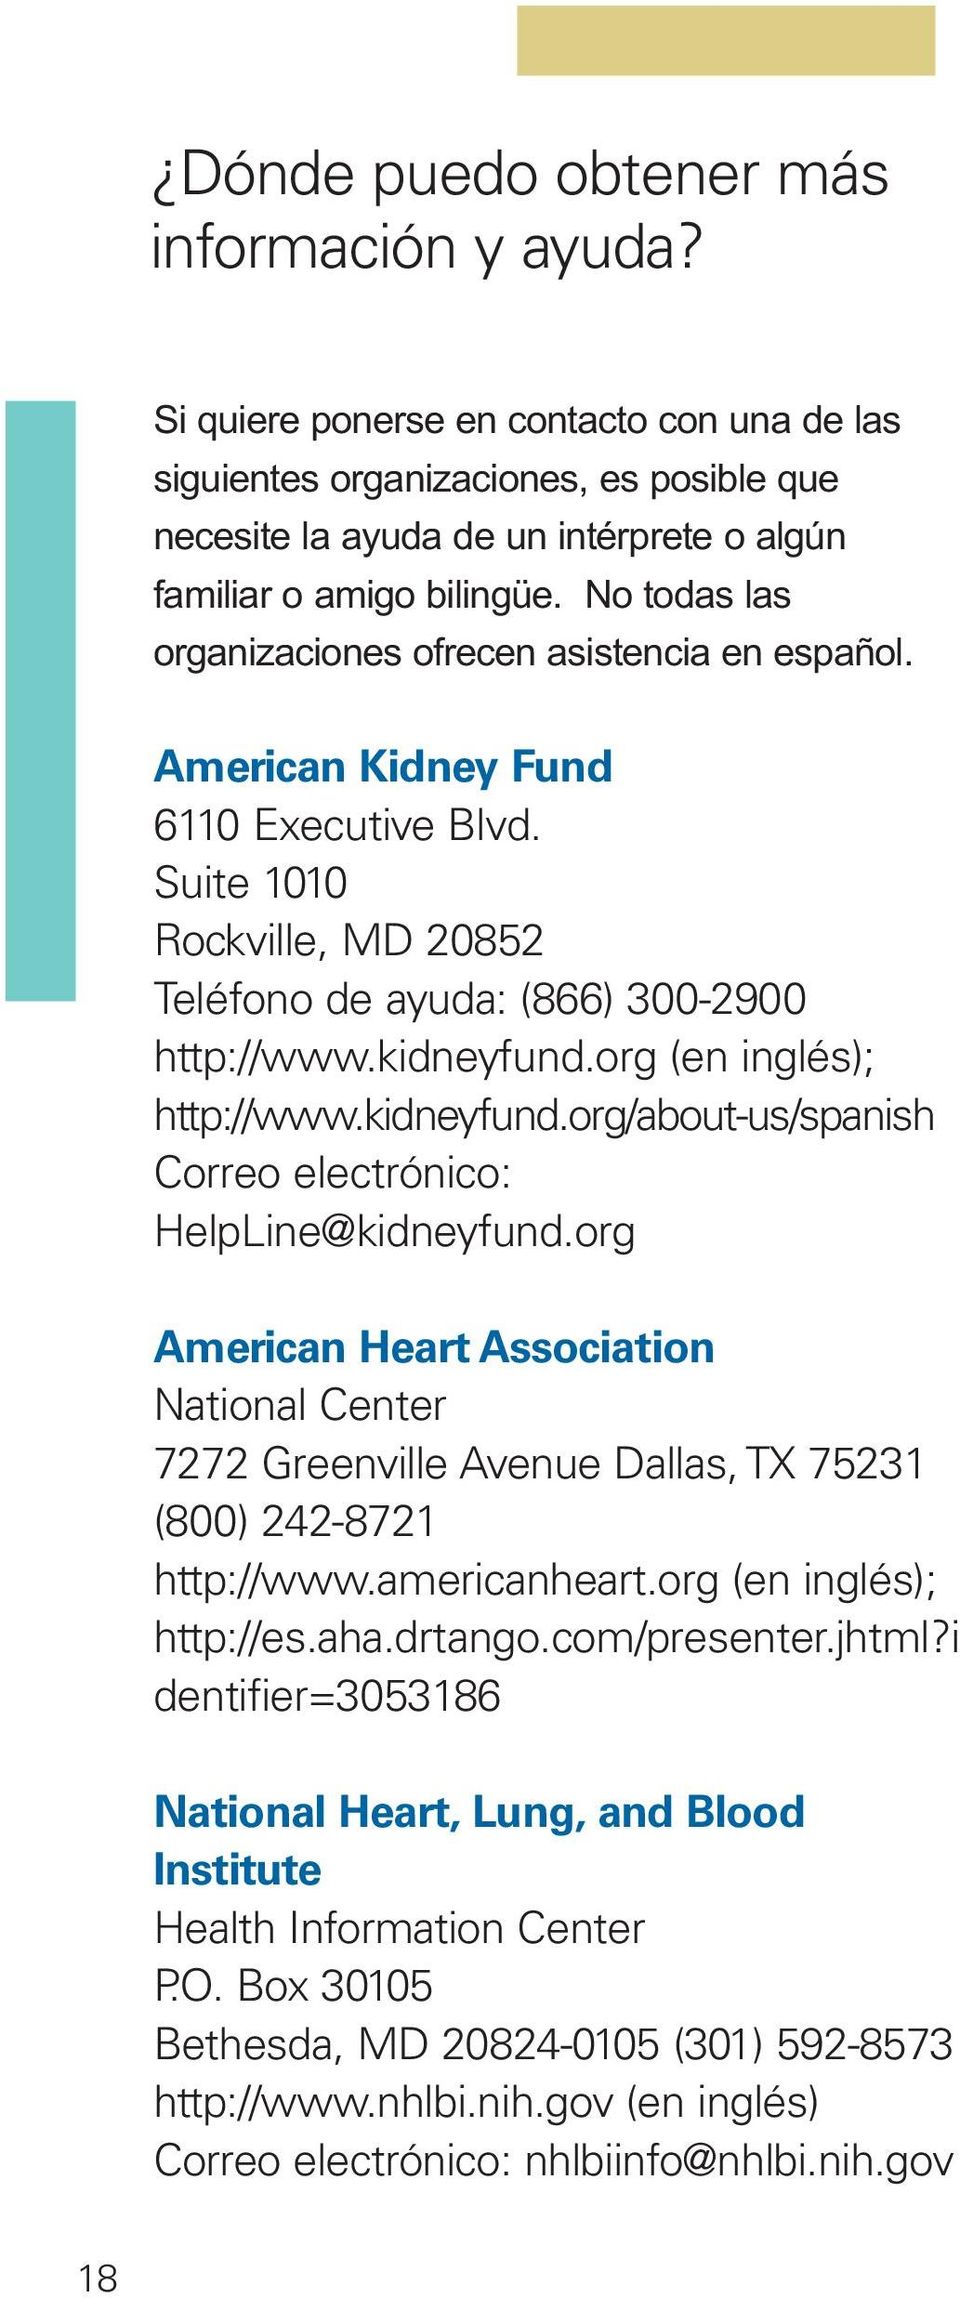 No todas las organizaciones ofrecen asistencia en español. American Kidney Fund 6110 Executive Blvd. Suite 1010 Rockville, MD 20852 Teléfono de ayuda: (866) 300-2900 http://www.kidneyfund.